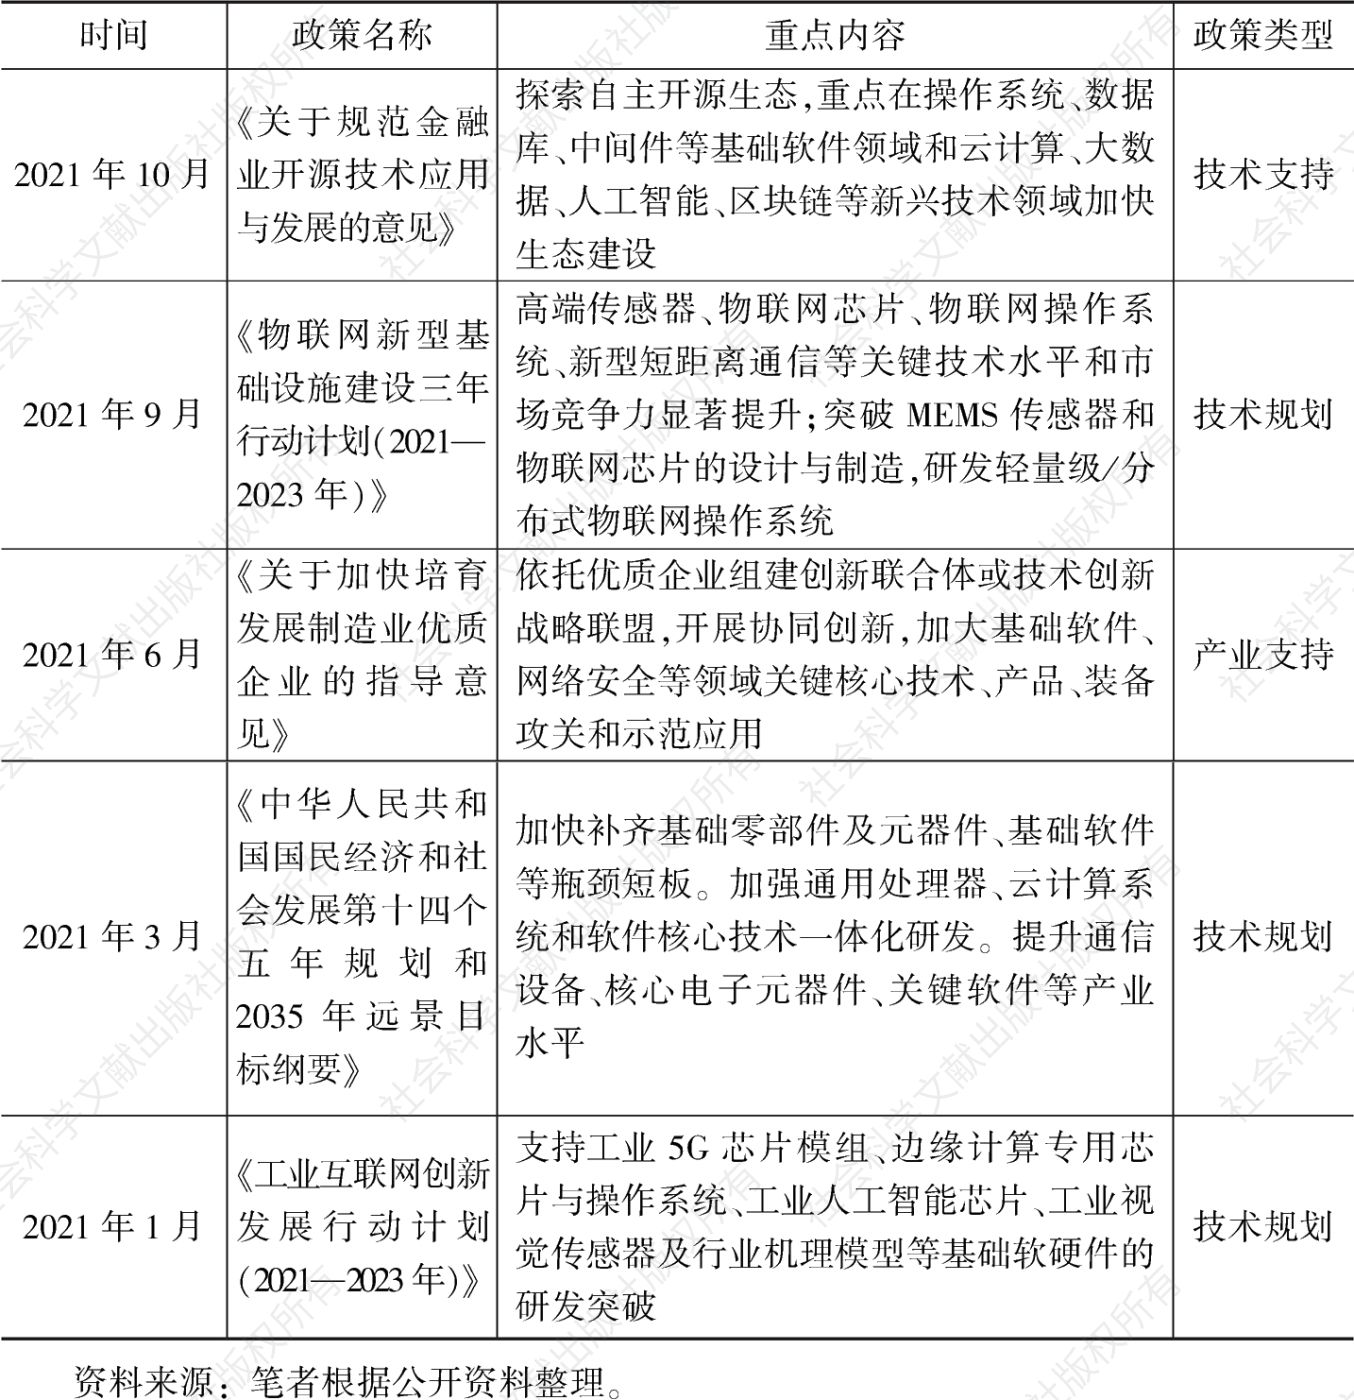 表1 2021年中国操作系统领域政策文件汇总